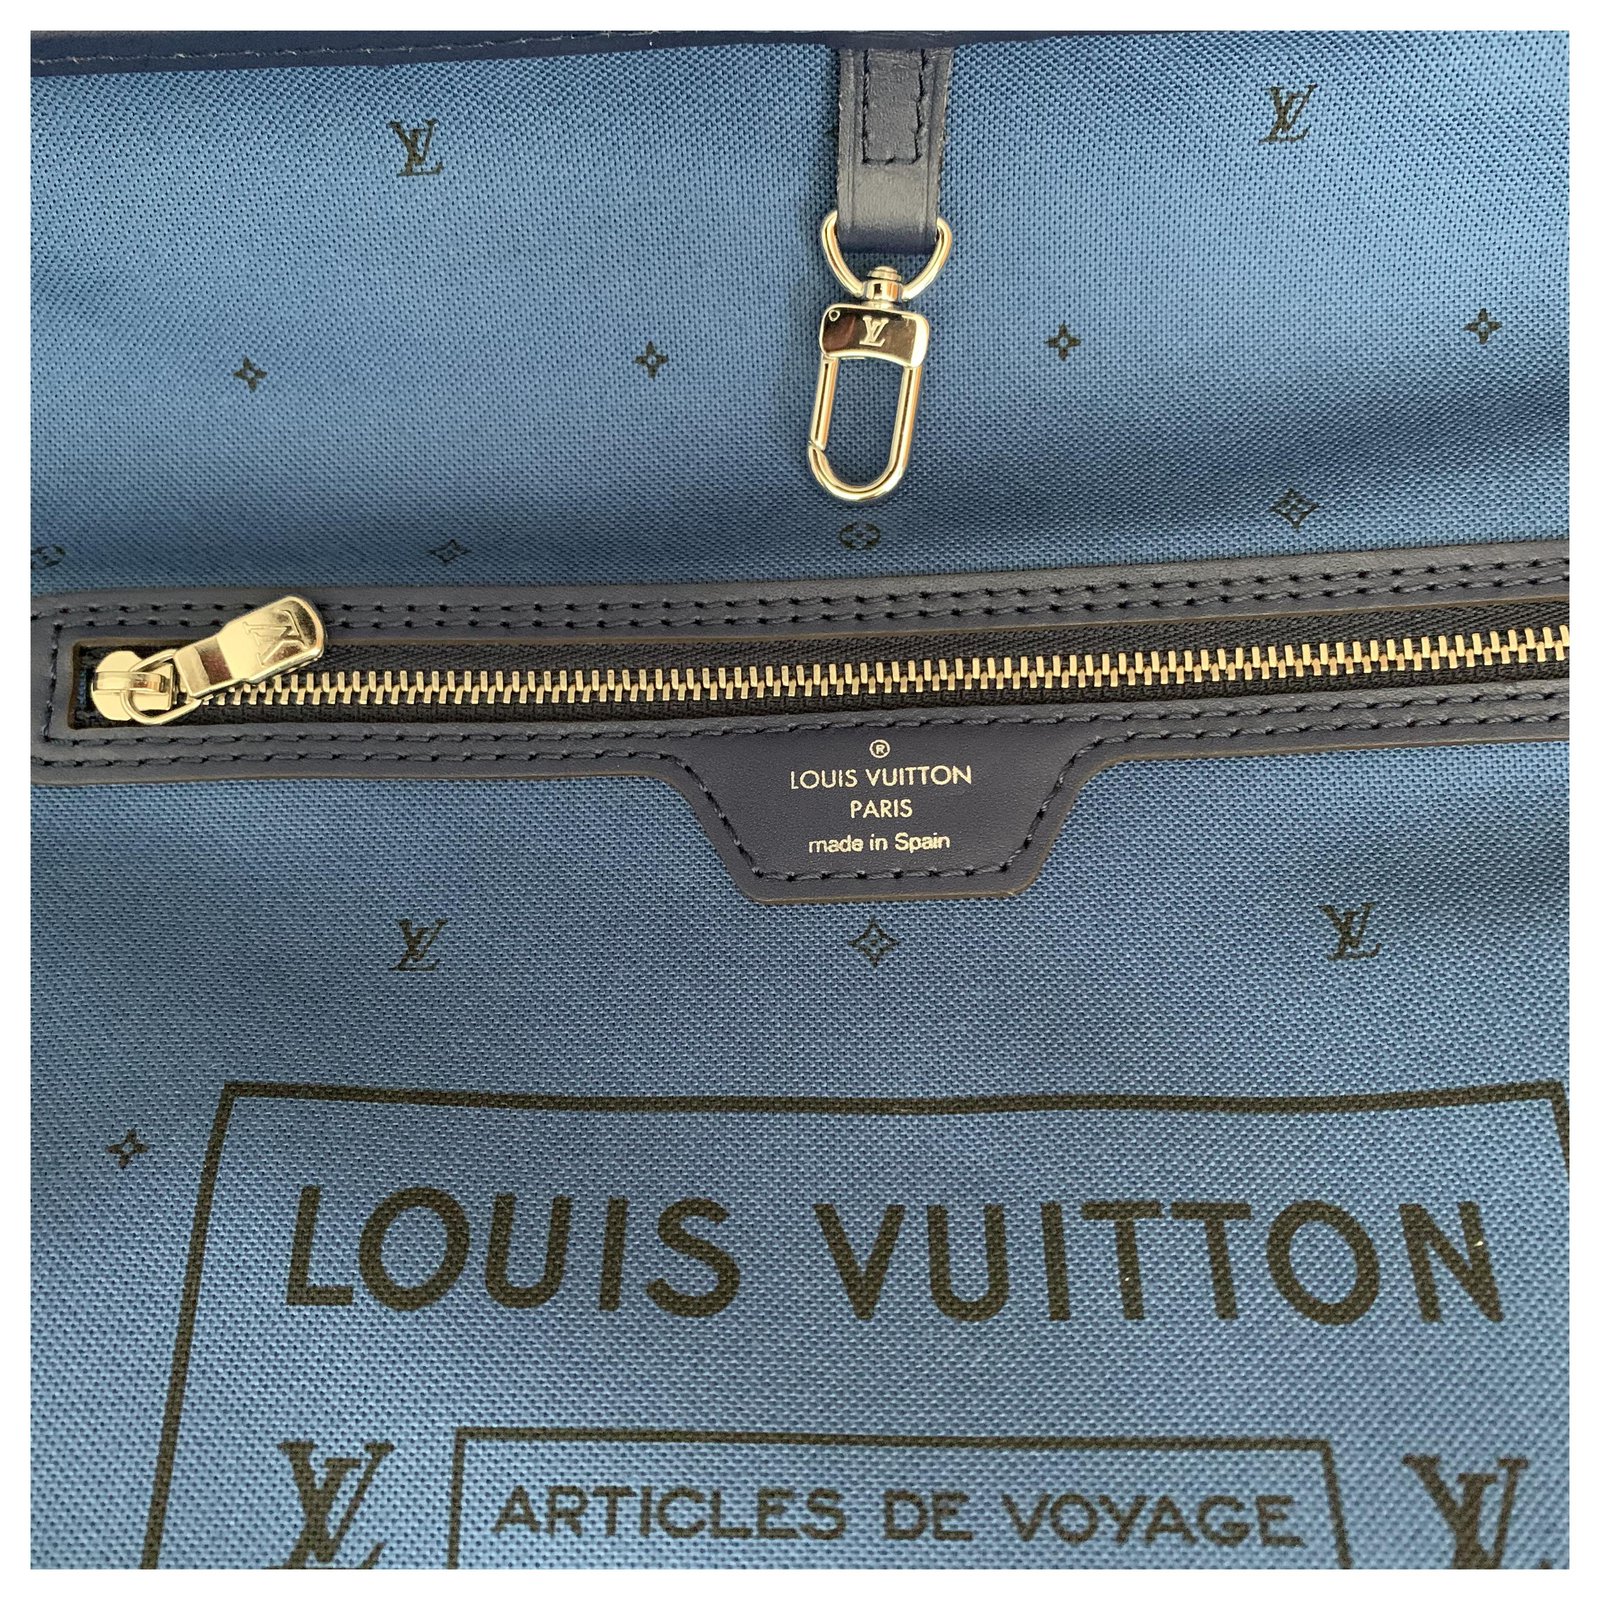 VERKAUFT - Louis Vuitton Neverfull MM Escale Blau Tasche * wie NEU